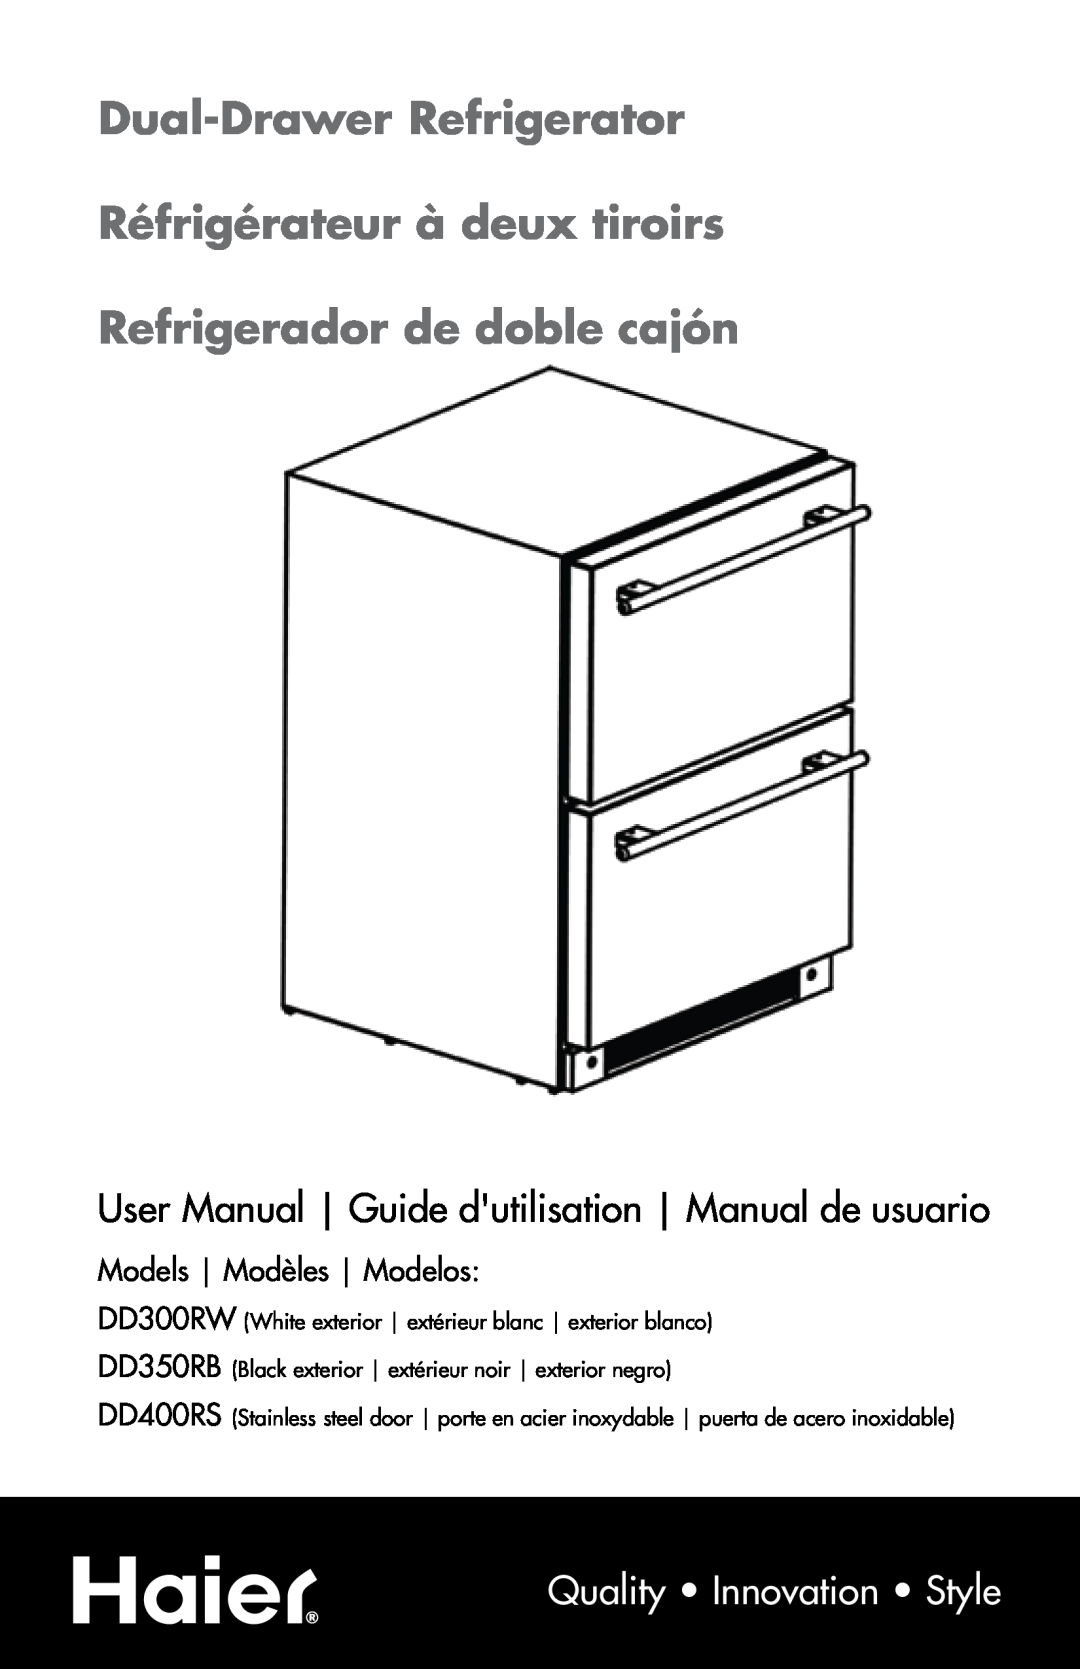 Haier DD400RS manual Dual-Drawer Refrigerator Réfrigérateur à deux tiroirs, Refrigerador de doble cajón 